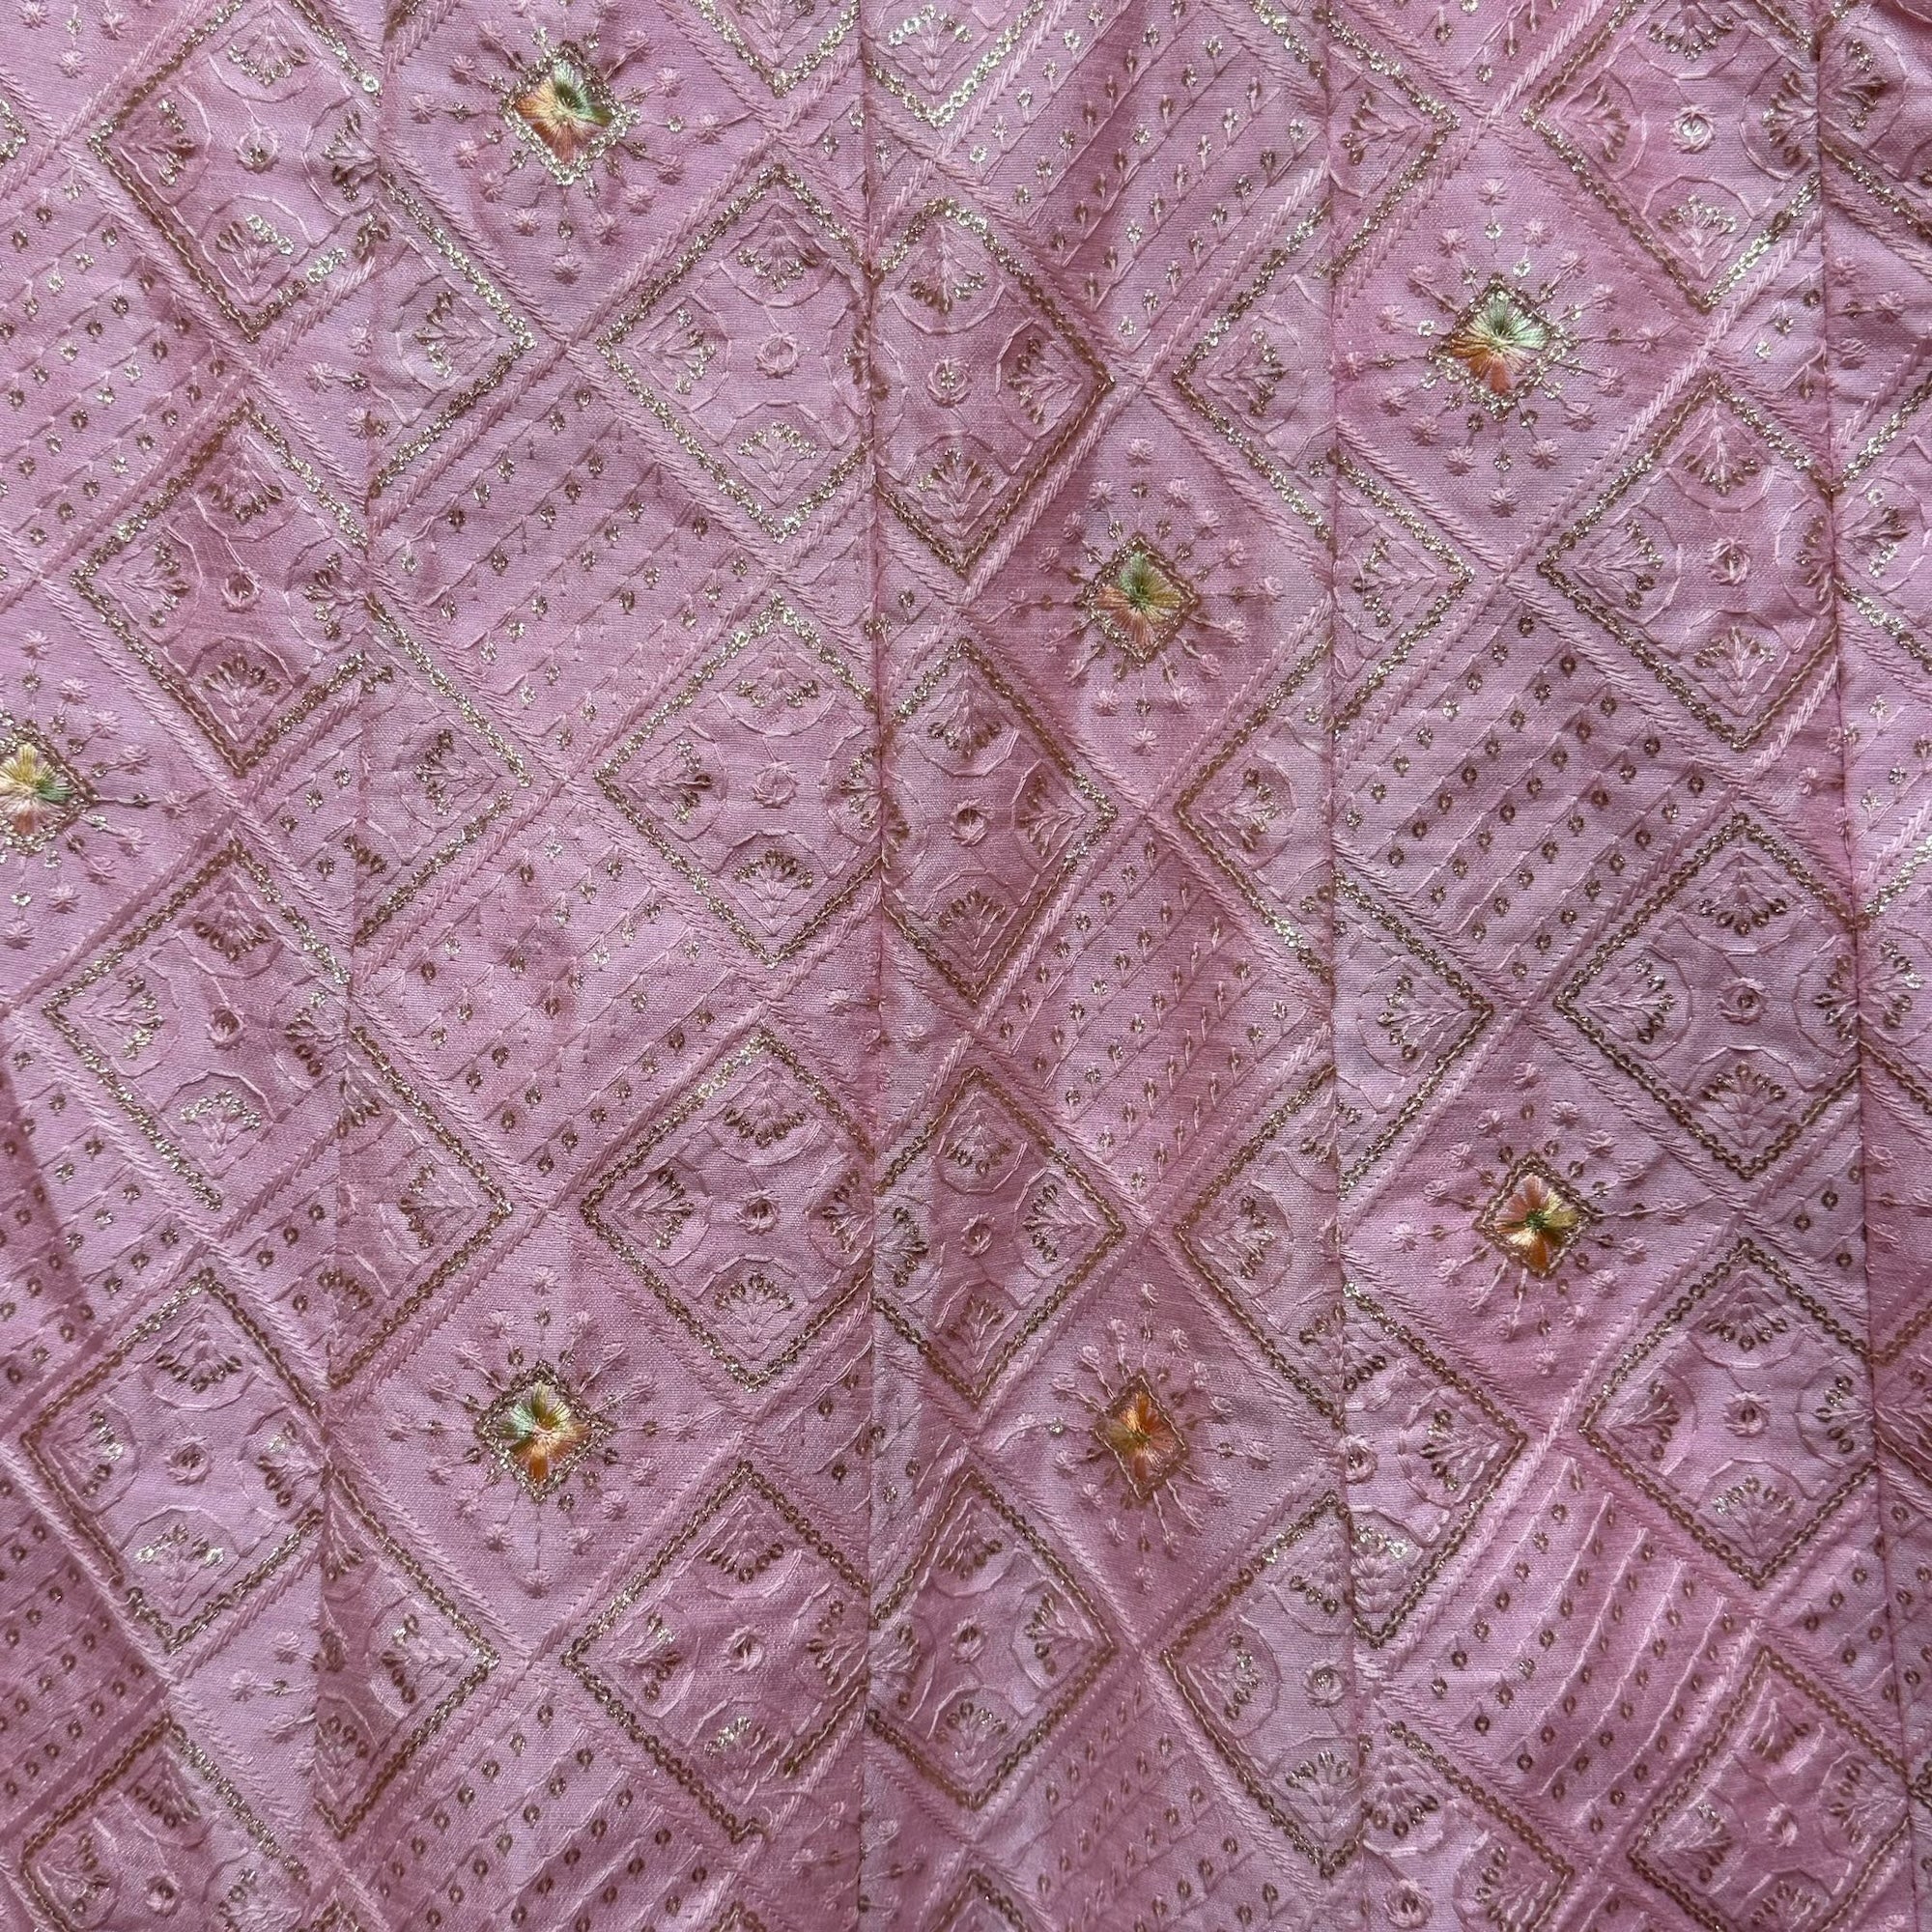 Diamond Threadwork Lehengas-2 Colors - Vintage India NYC